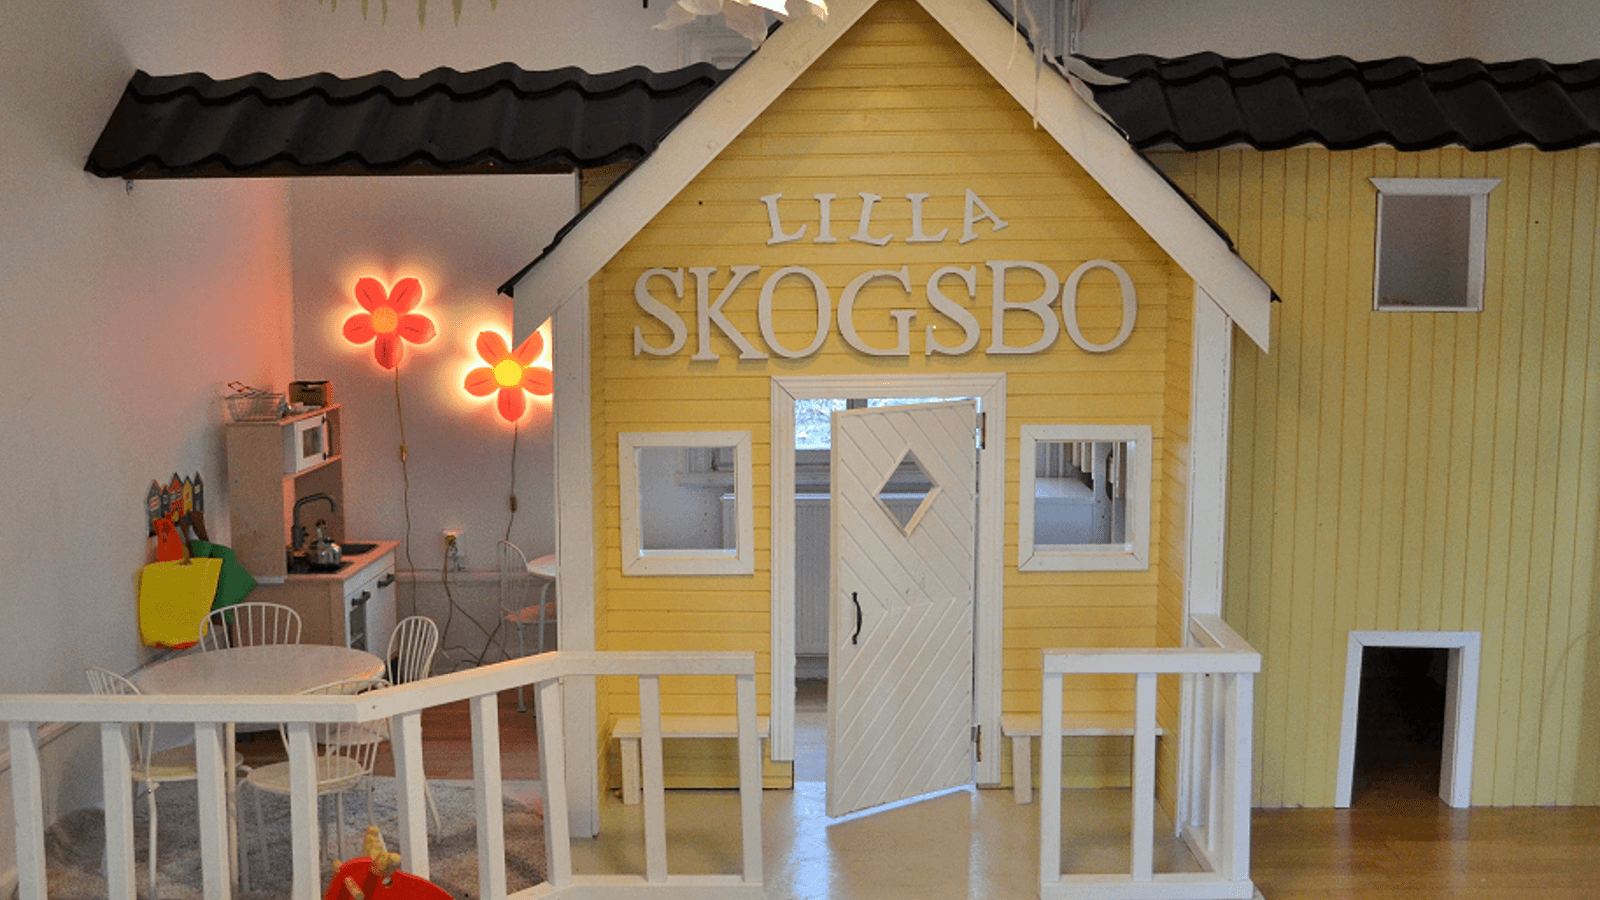 Ett lekrum inne i skyddade boendet Skogsbo med en lekstuga som har namnet "Lilla Skogsbo".